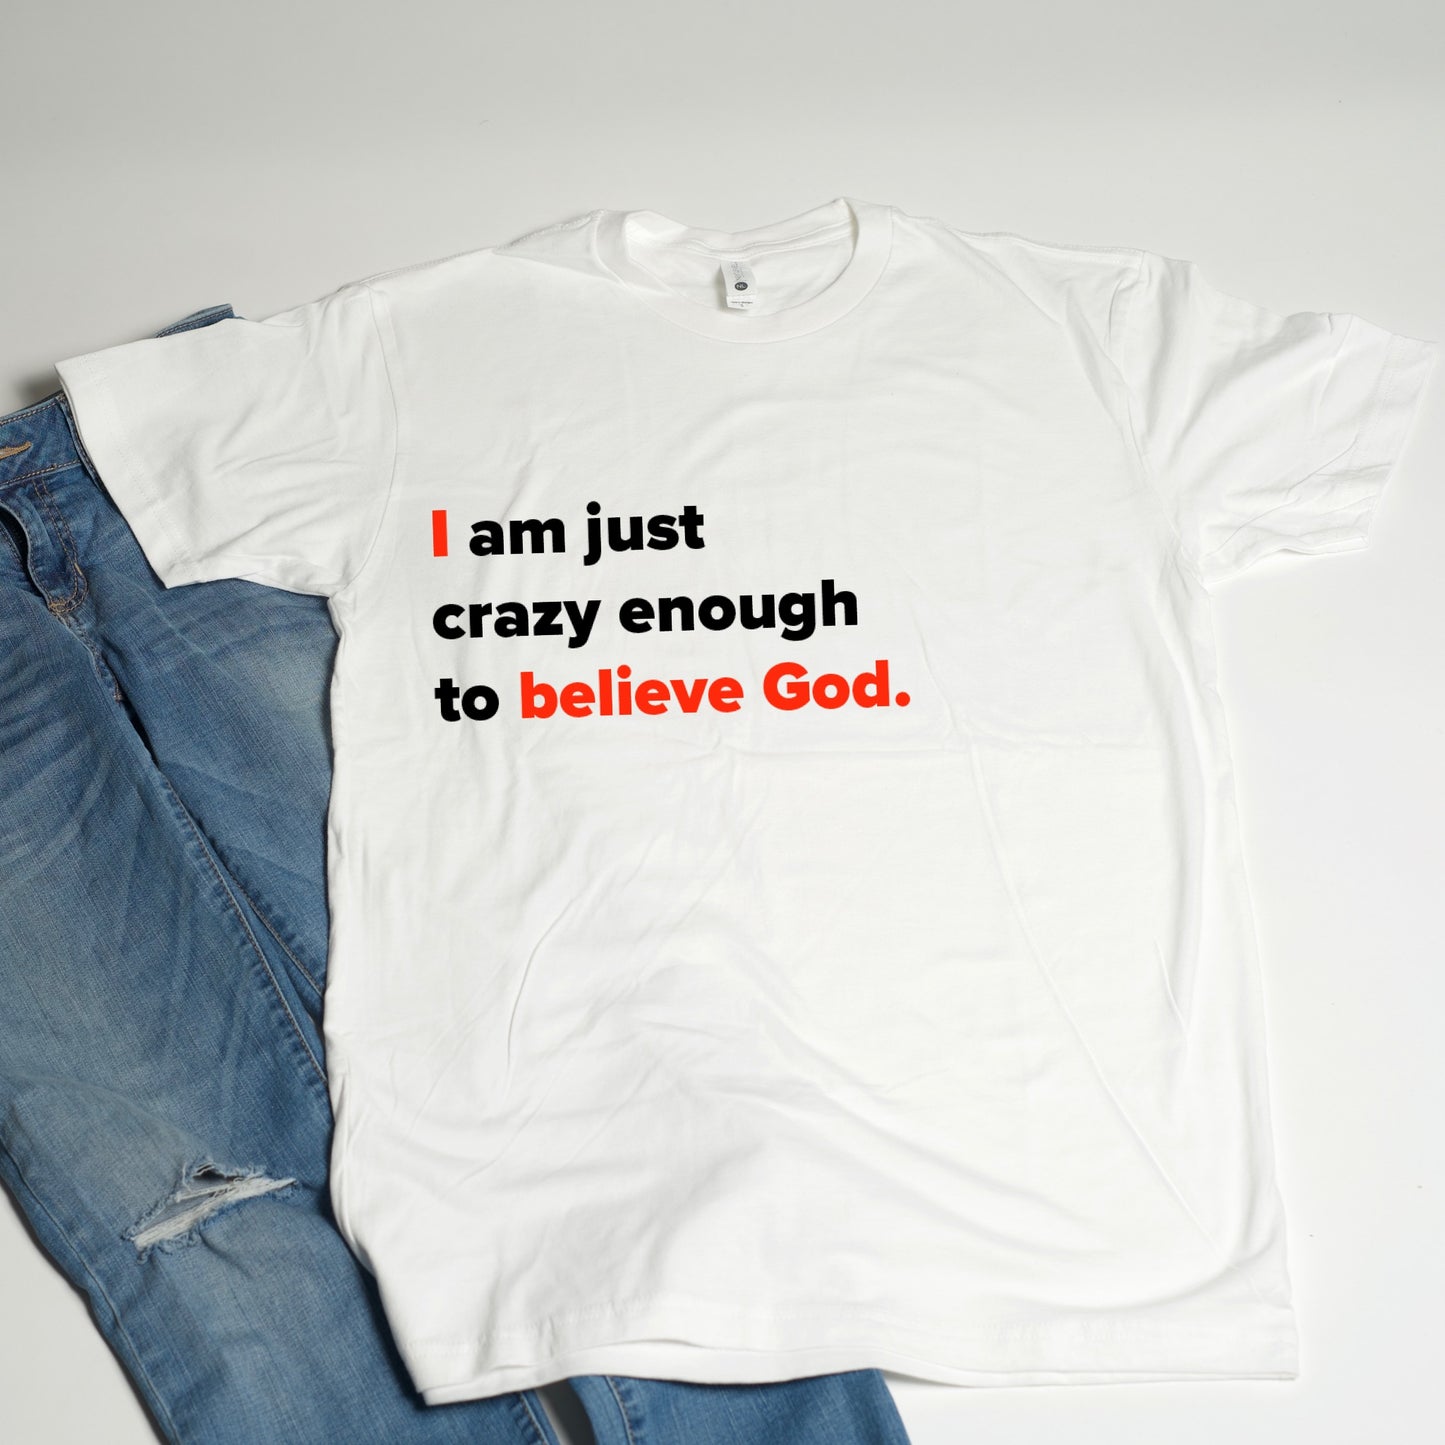 I believe God